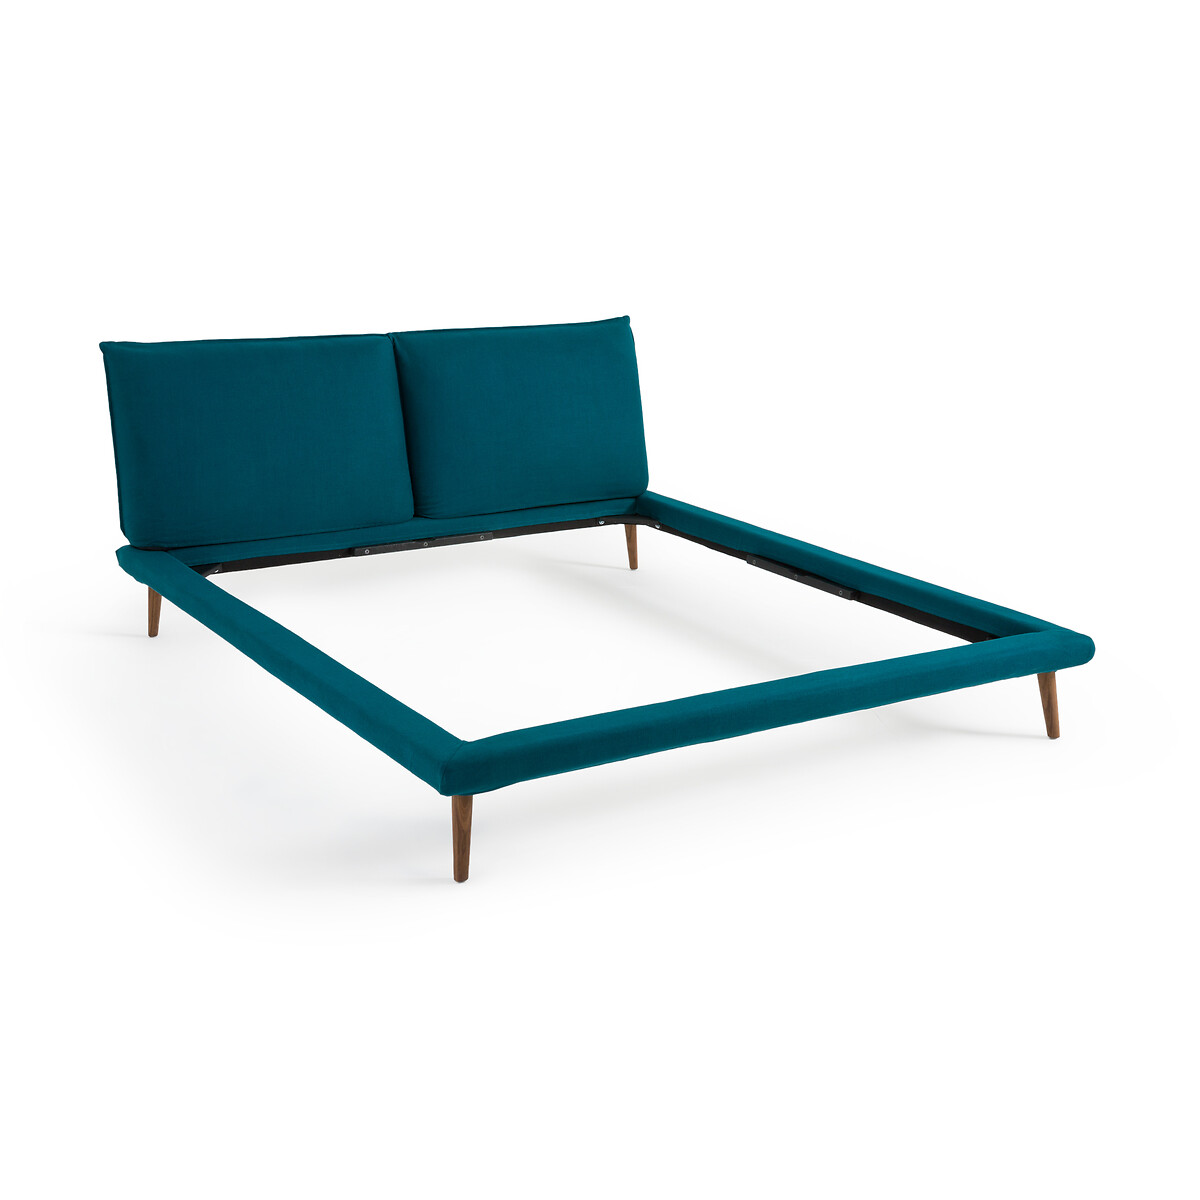 Кровать изо льна без кроватного основания Aurore дизайн Э  Галлина  160 x 200 см синий LaRedoute, размер 160 x 200 см - фото 4